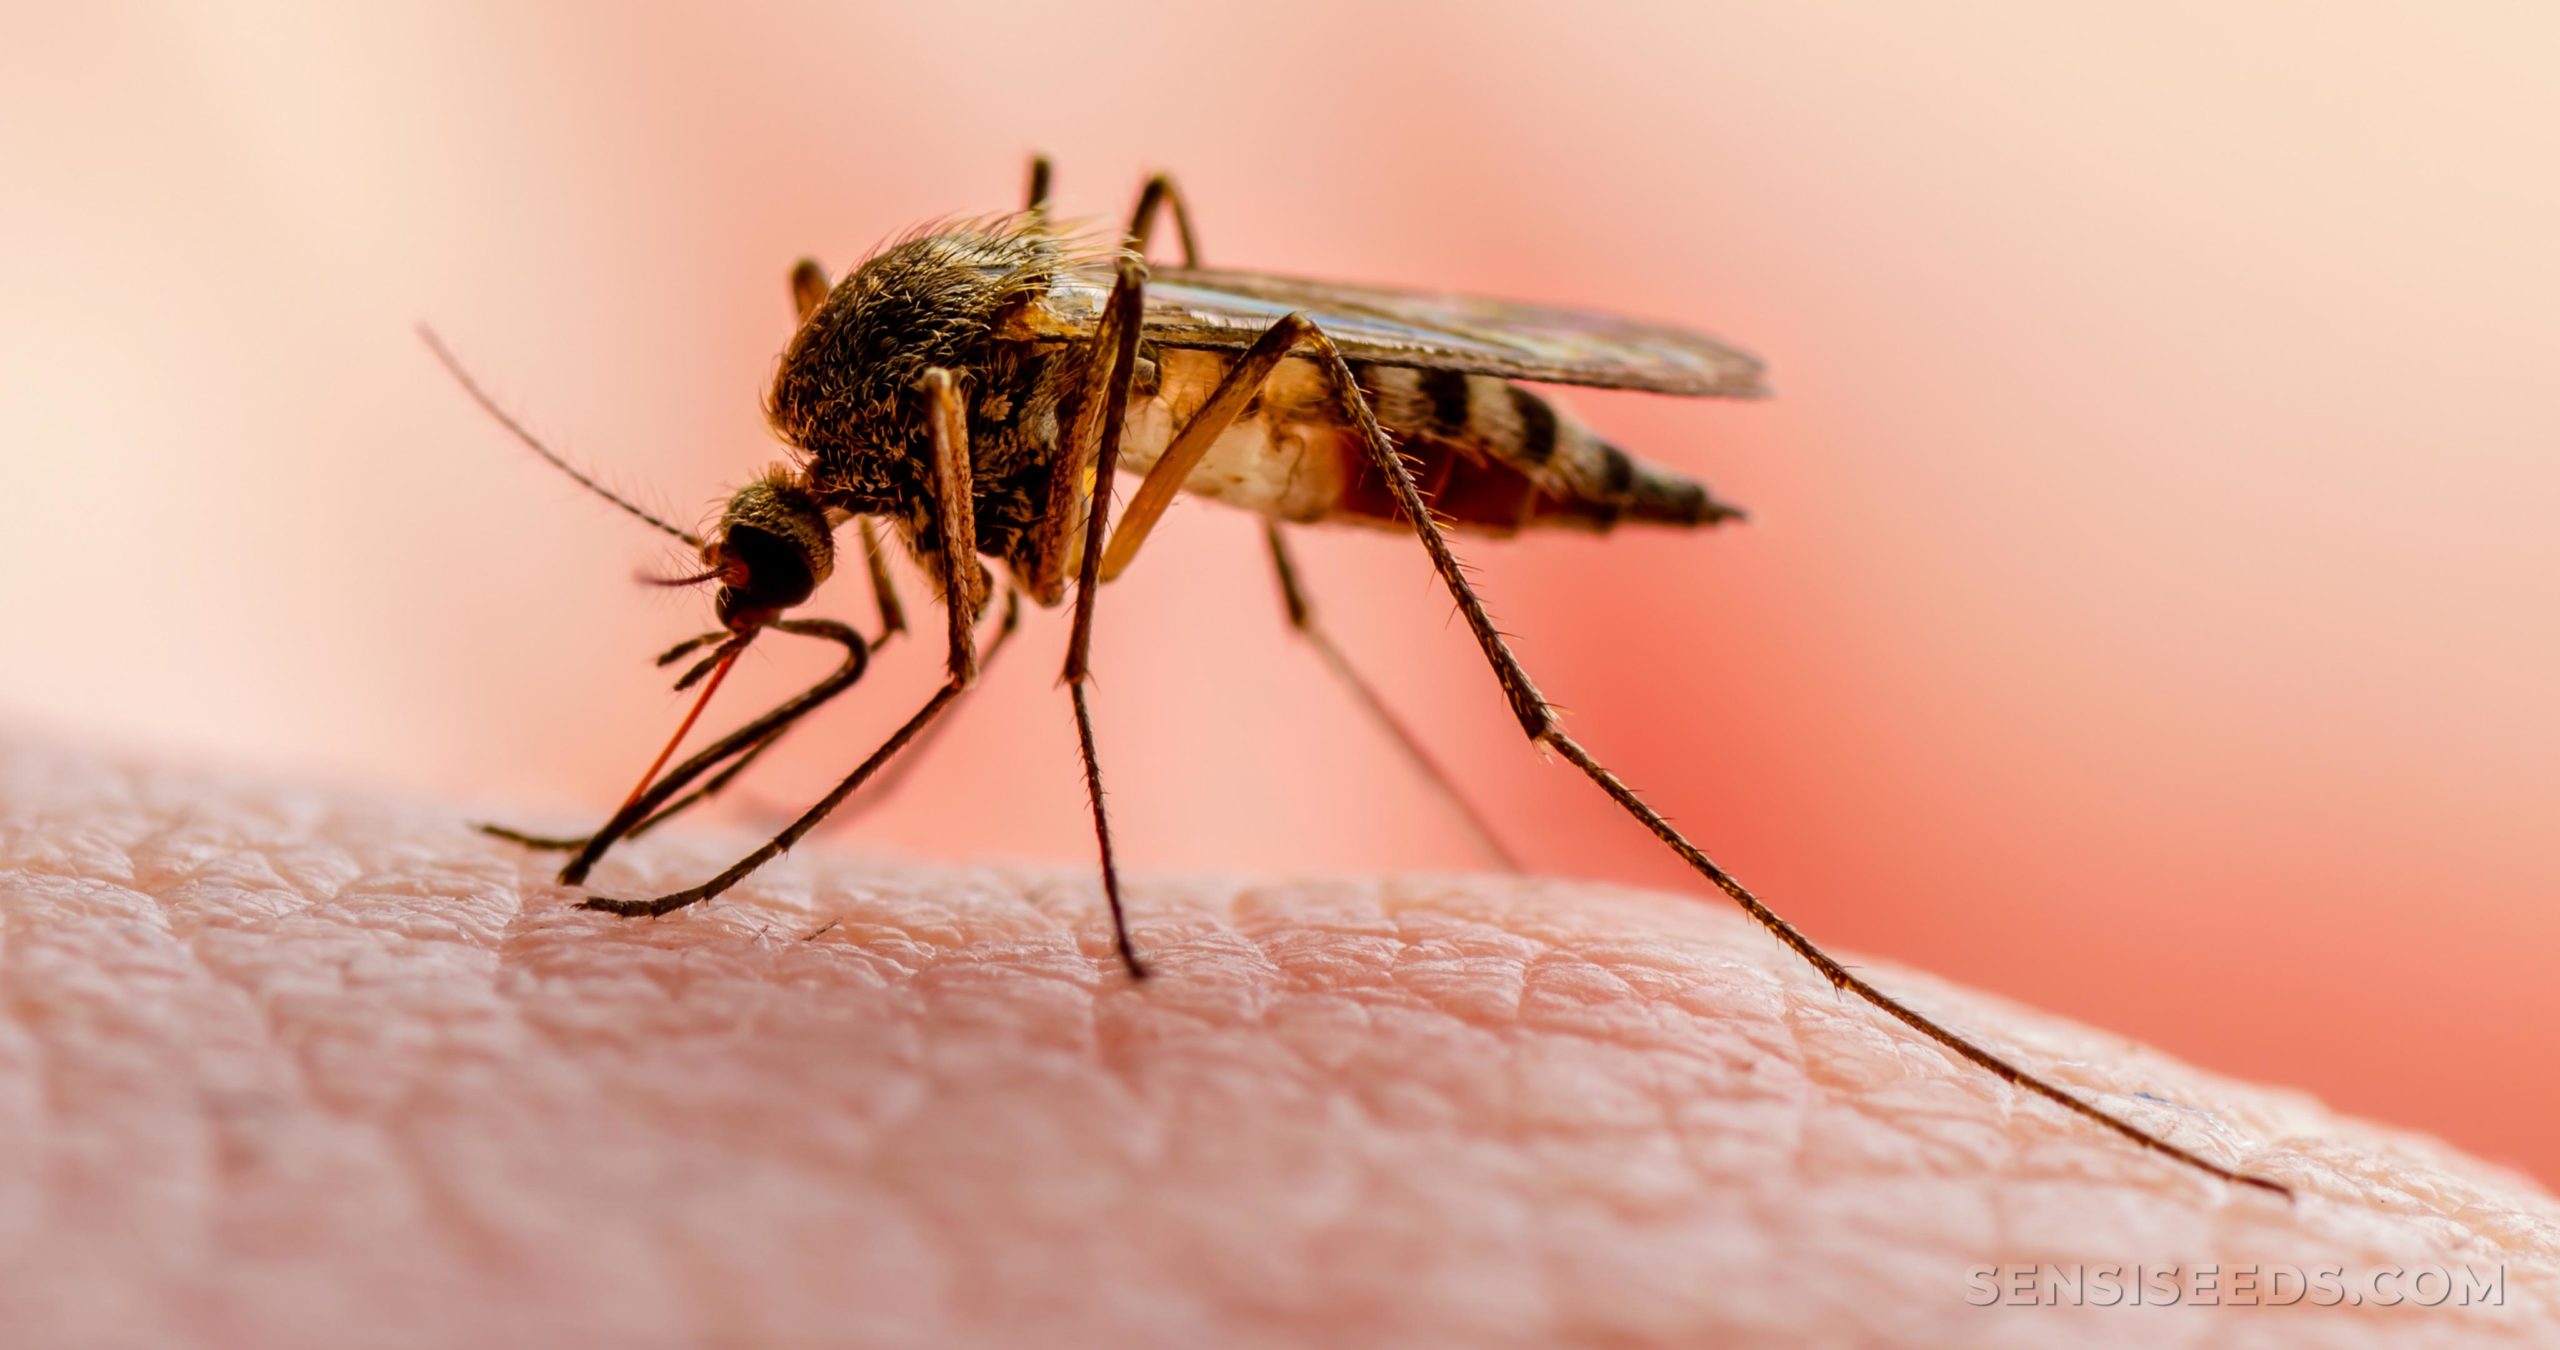 141 malaria cases reported in Vietnam